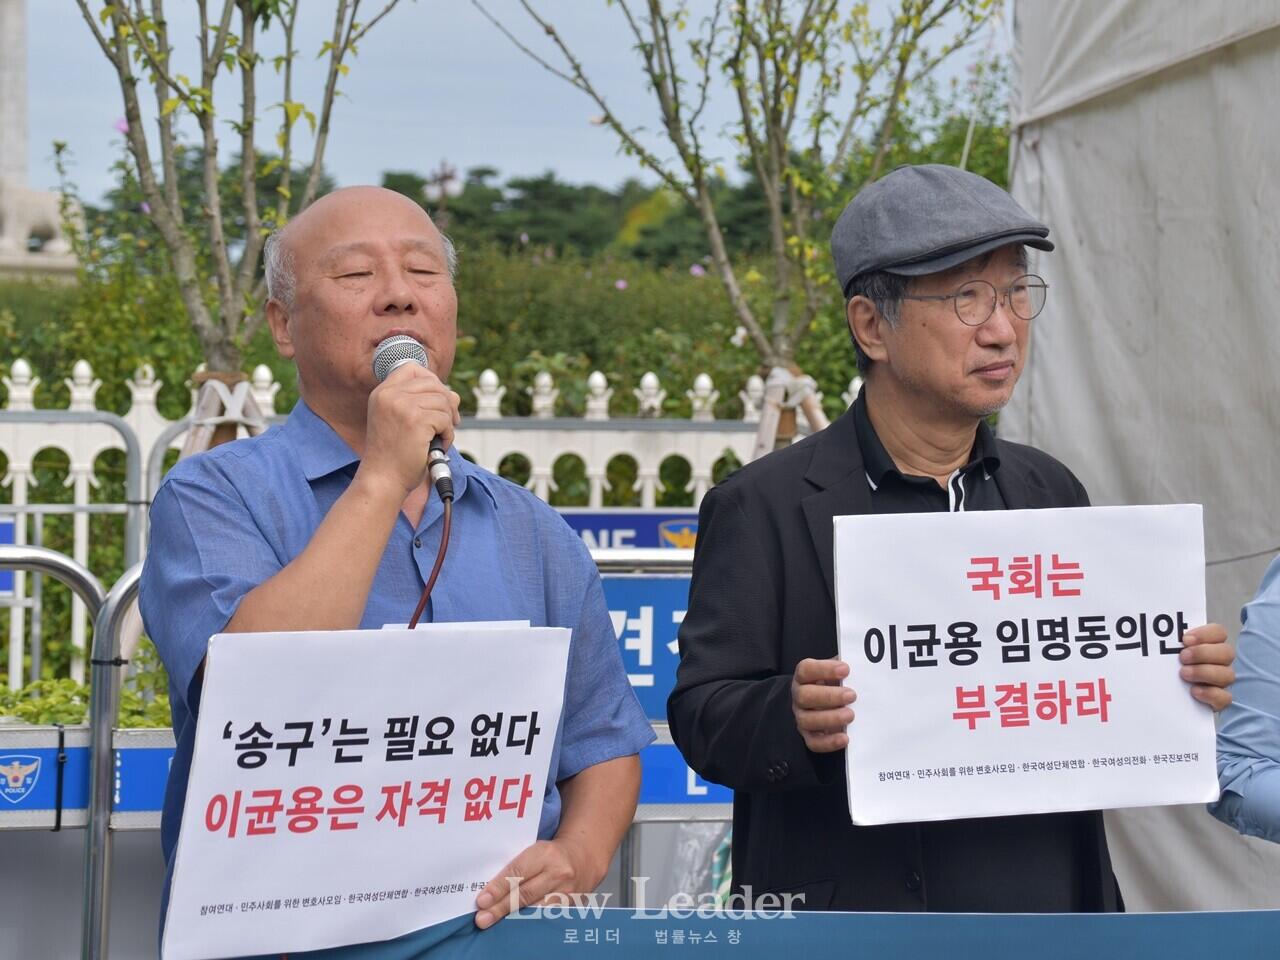 한국진보연대 박석운 공동대표(왼쪽), 참여연대 한상희 공동대표(오른쪽)